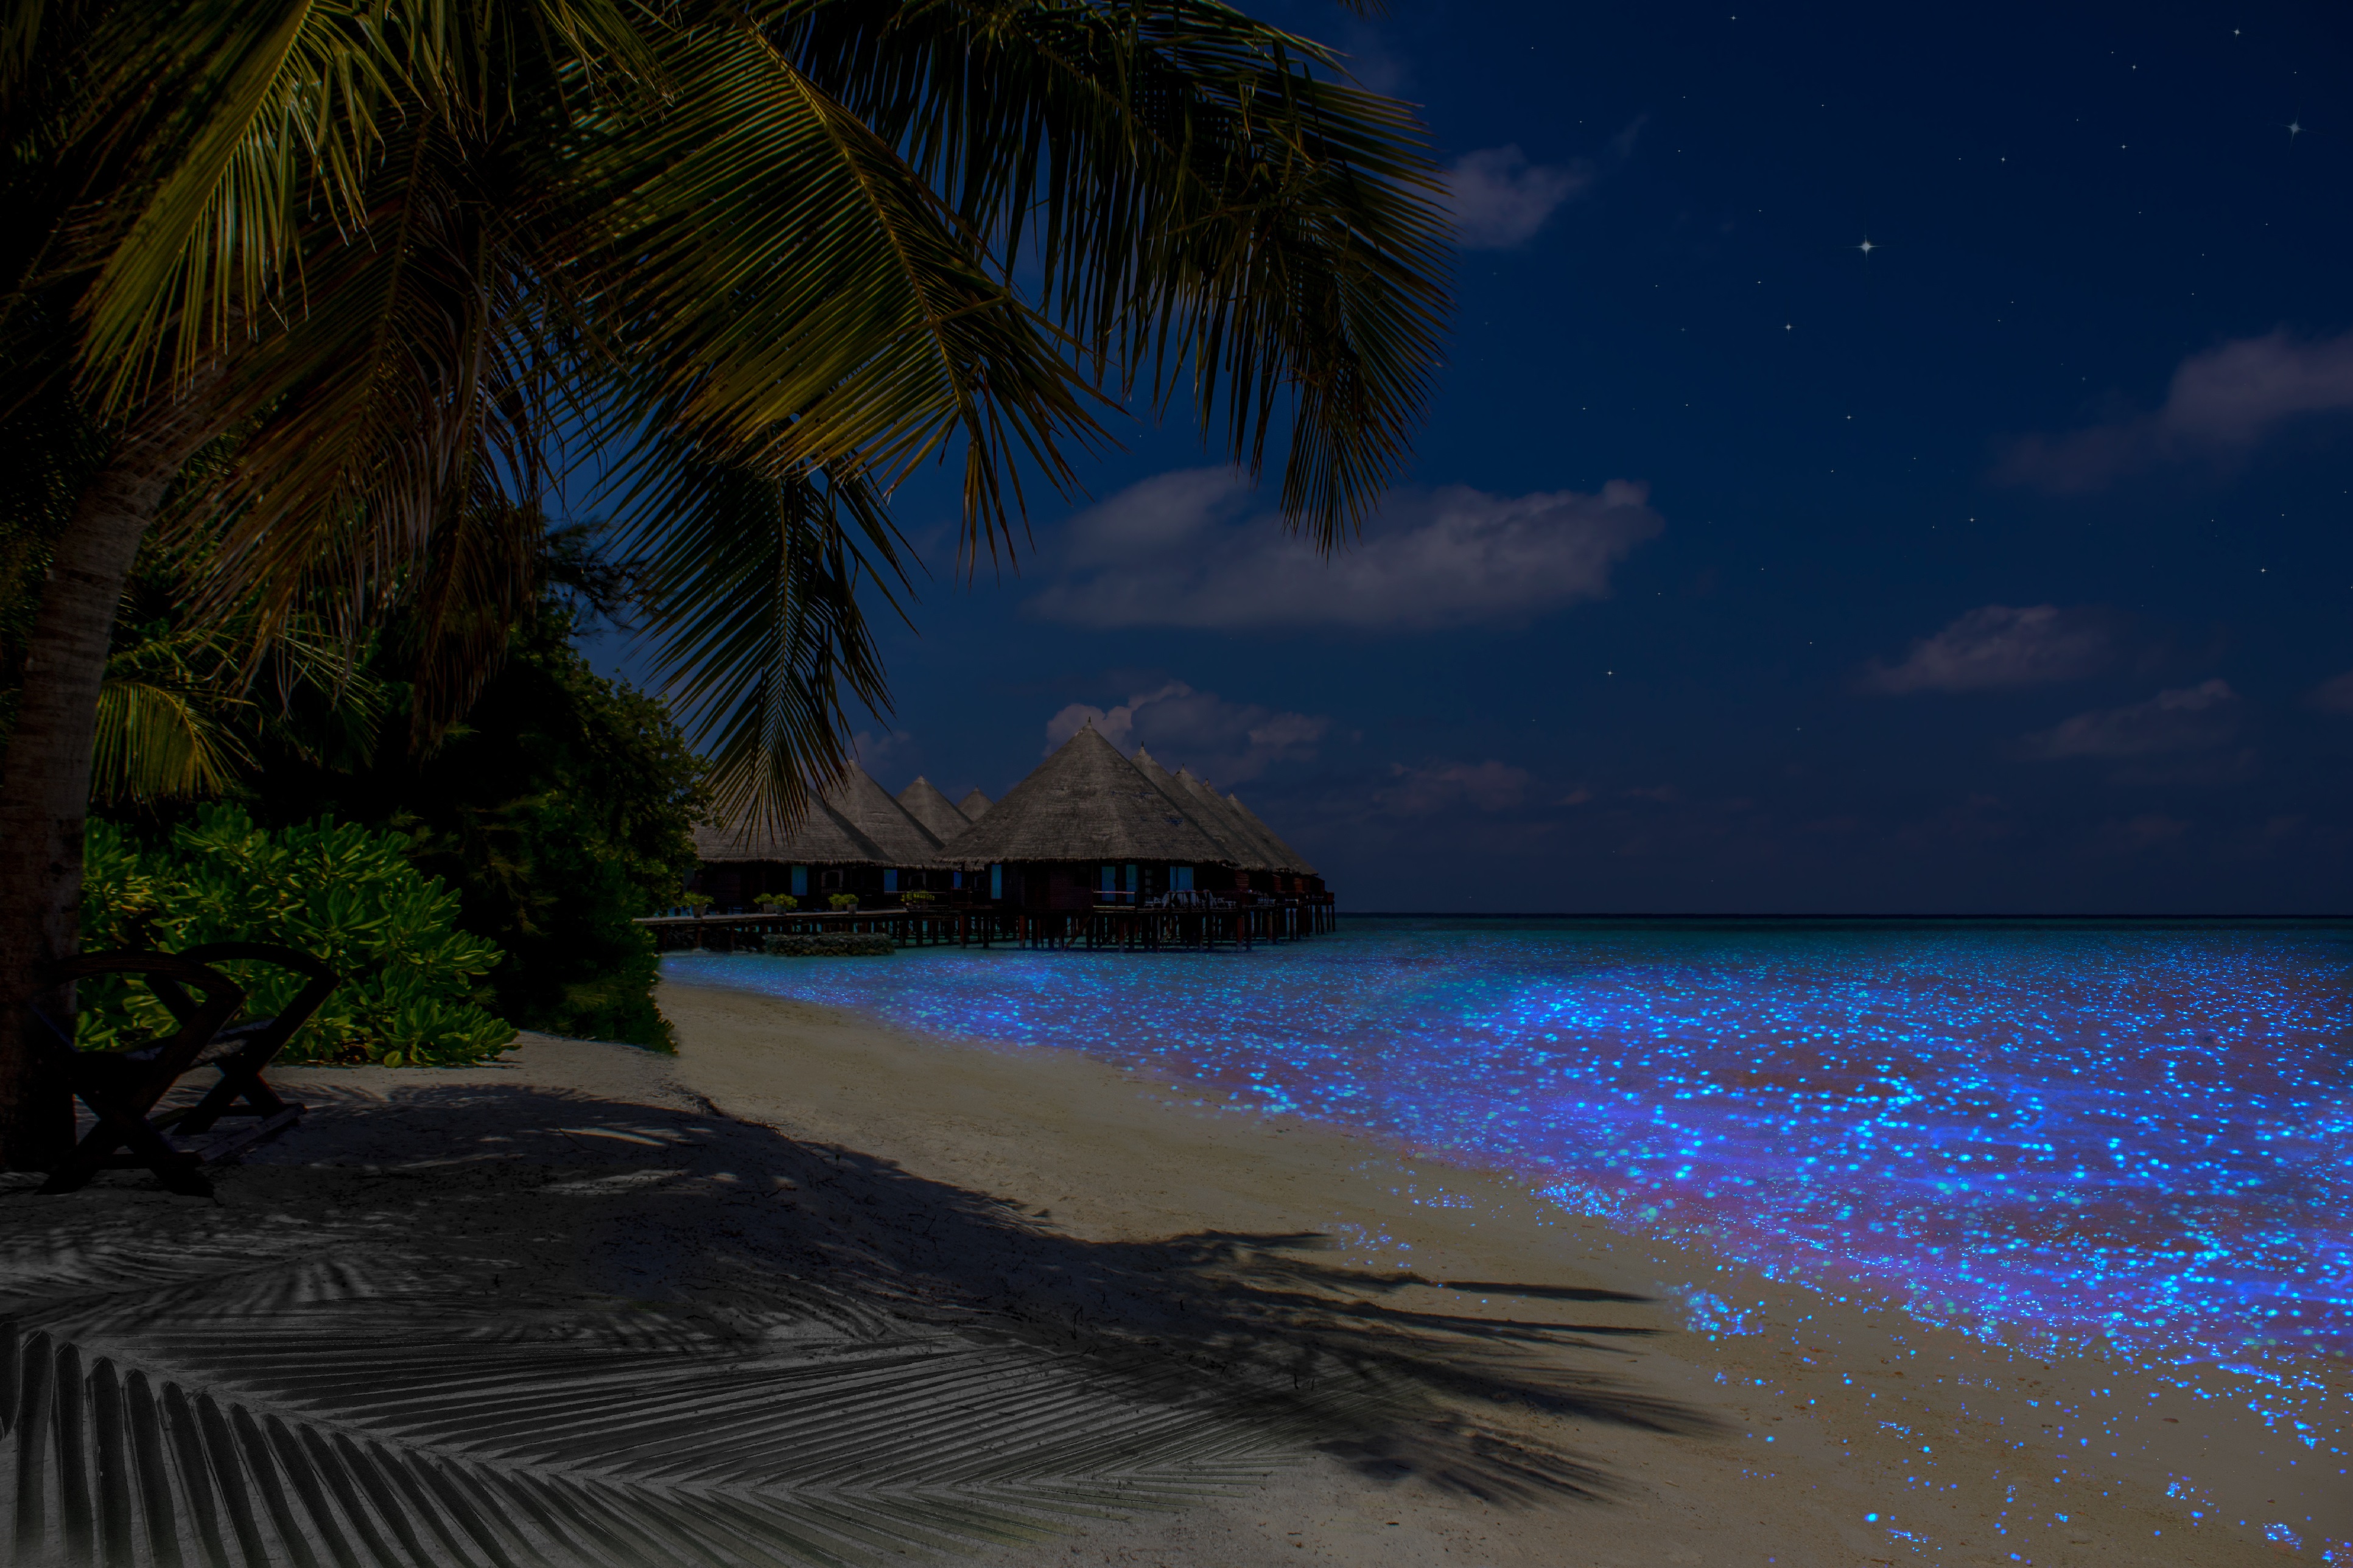 Една от най-изумителните гледки на света - плажът на остров Ваду, Малдивите. Получава се фосфоресциращото явление, с което са известни. Учените са установили, че синята светлина идва от планктон, който реагира при контакт с кислород.